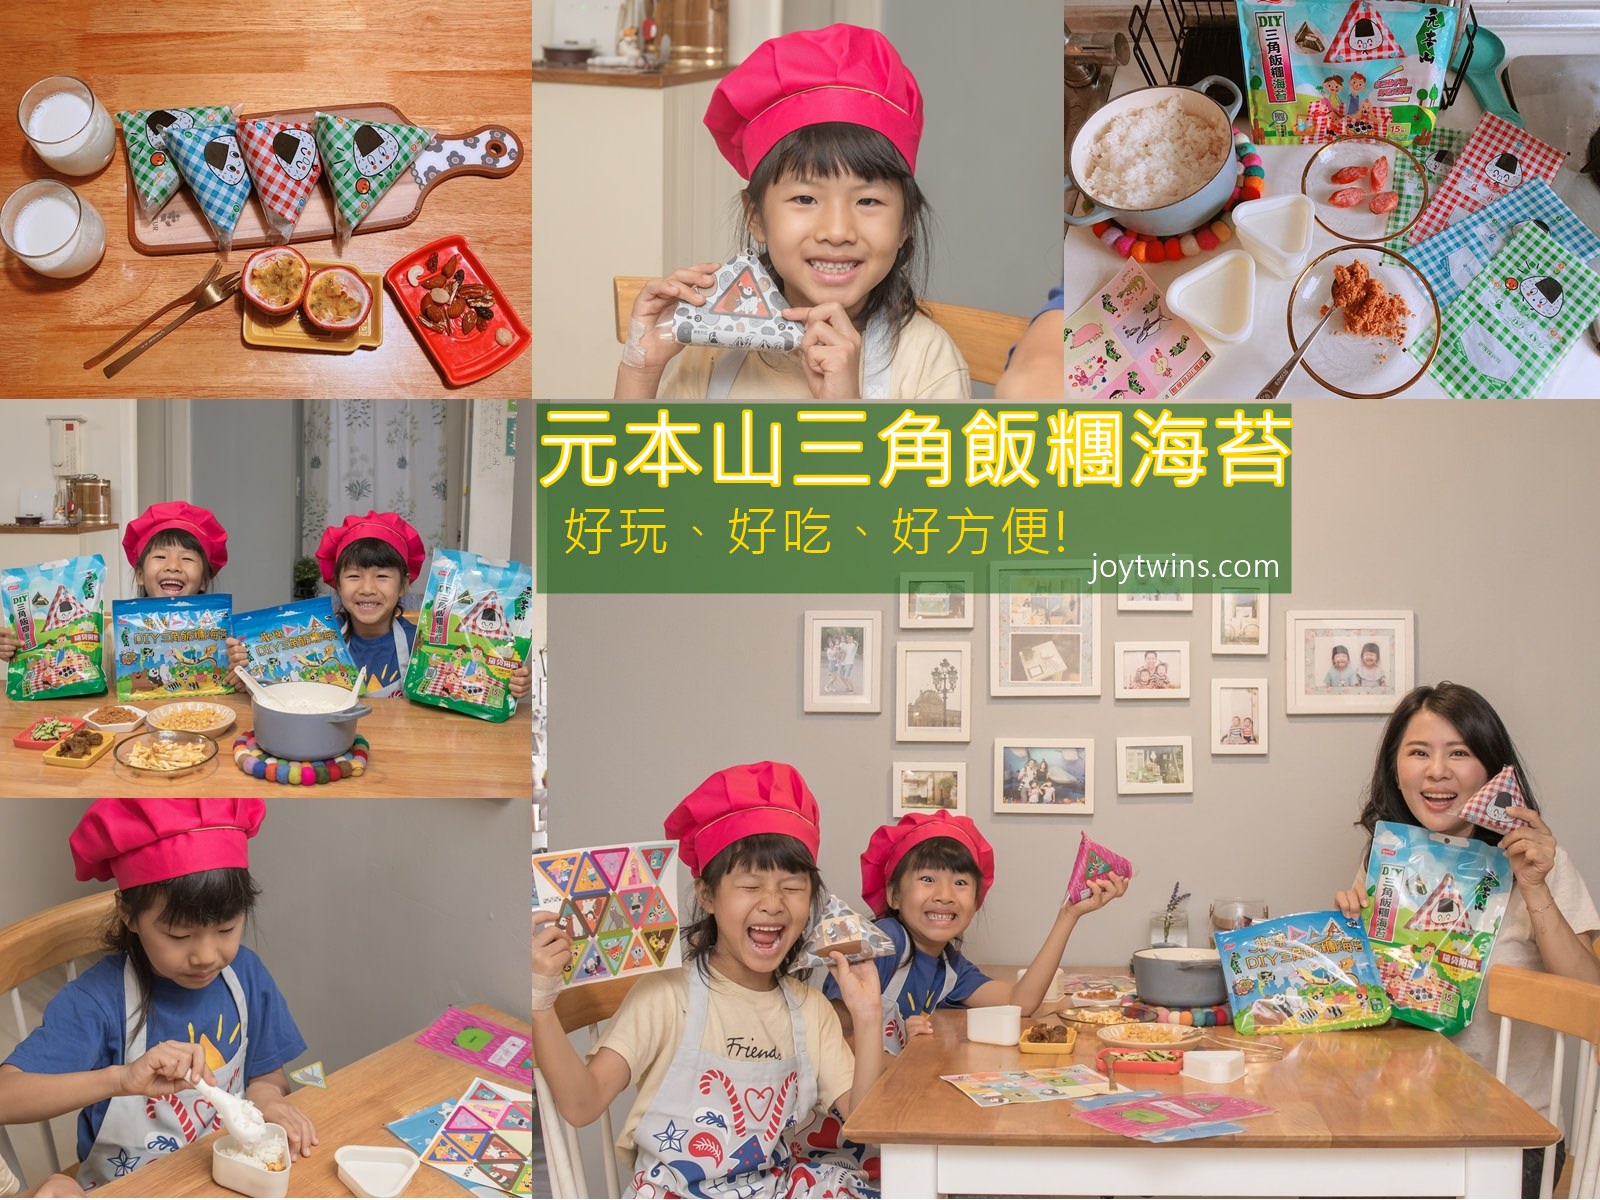 元本山DIY三角飯糰海苔 親子手做飯糰 輕鬆上桌 營養、健康、方便又美味! 快跟小朋友一起動手DIY